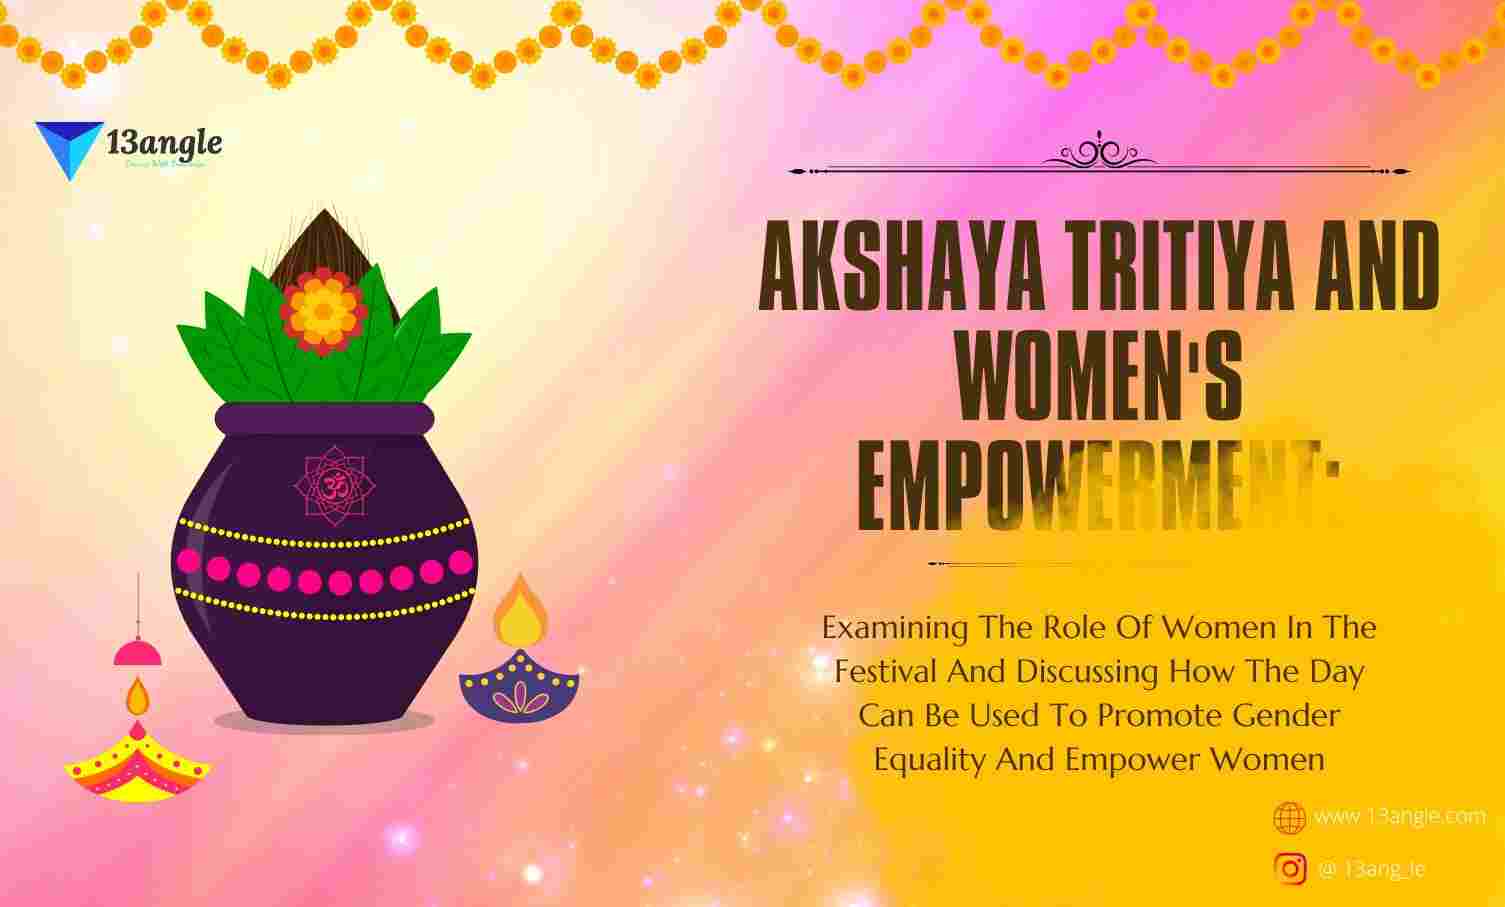 Akshaya Tritiya And Women's Empowerment- The Bridge (13angle)